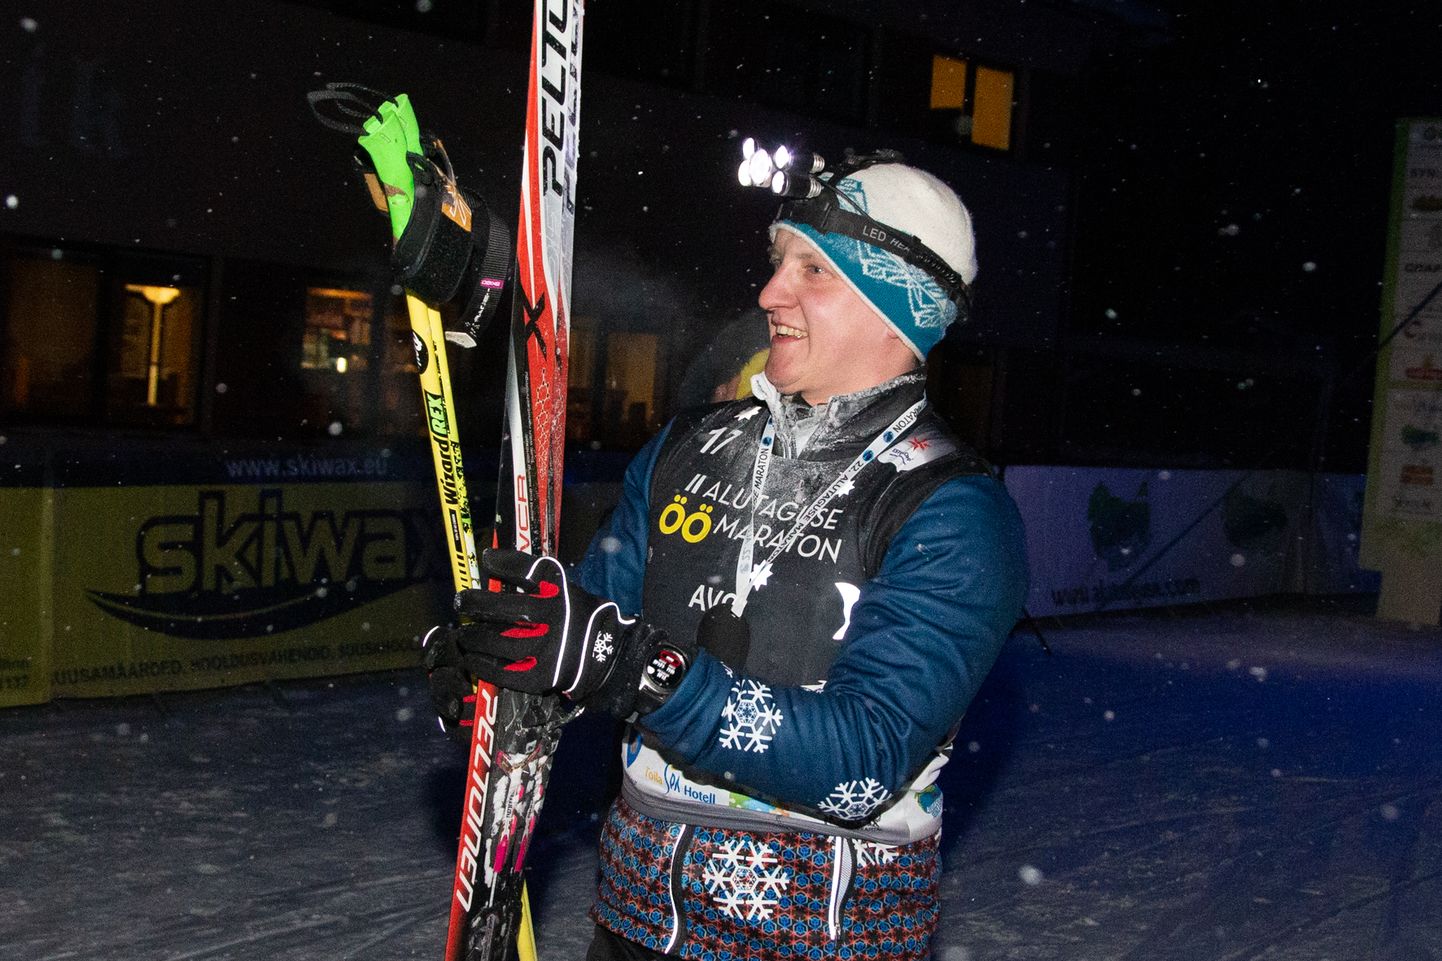 Аво Самбла, входивший также в число лучших молодых лыжников Эстонии, около десяти лет действует в Ида-Вирумаа в качестве лыжного тренера, а последние четыре года руководил также расположенным в Паннъярве Алутагузеским центром отдыха и спорта.